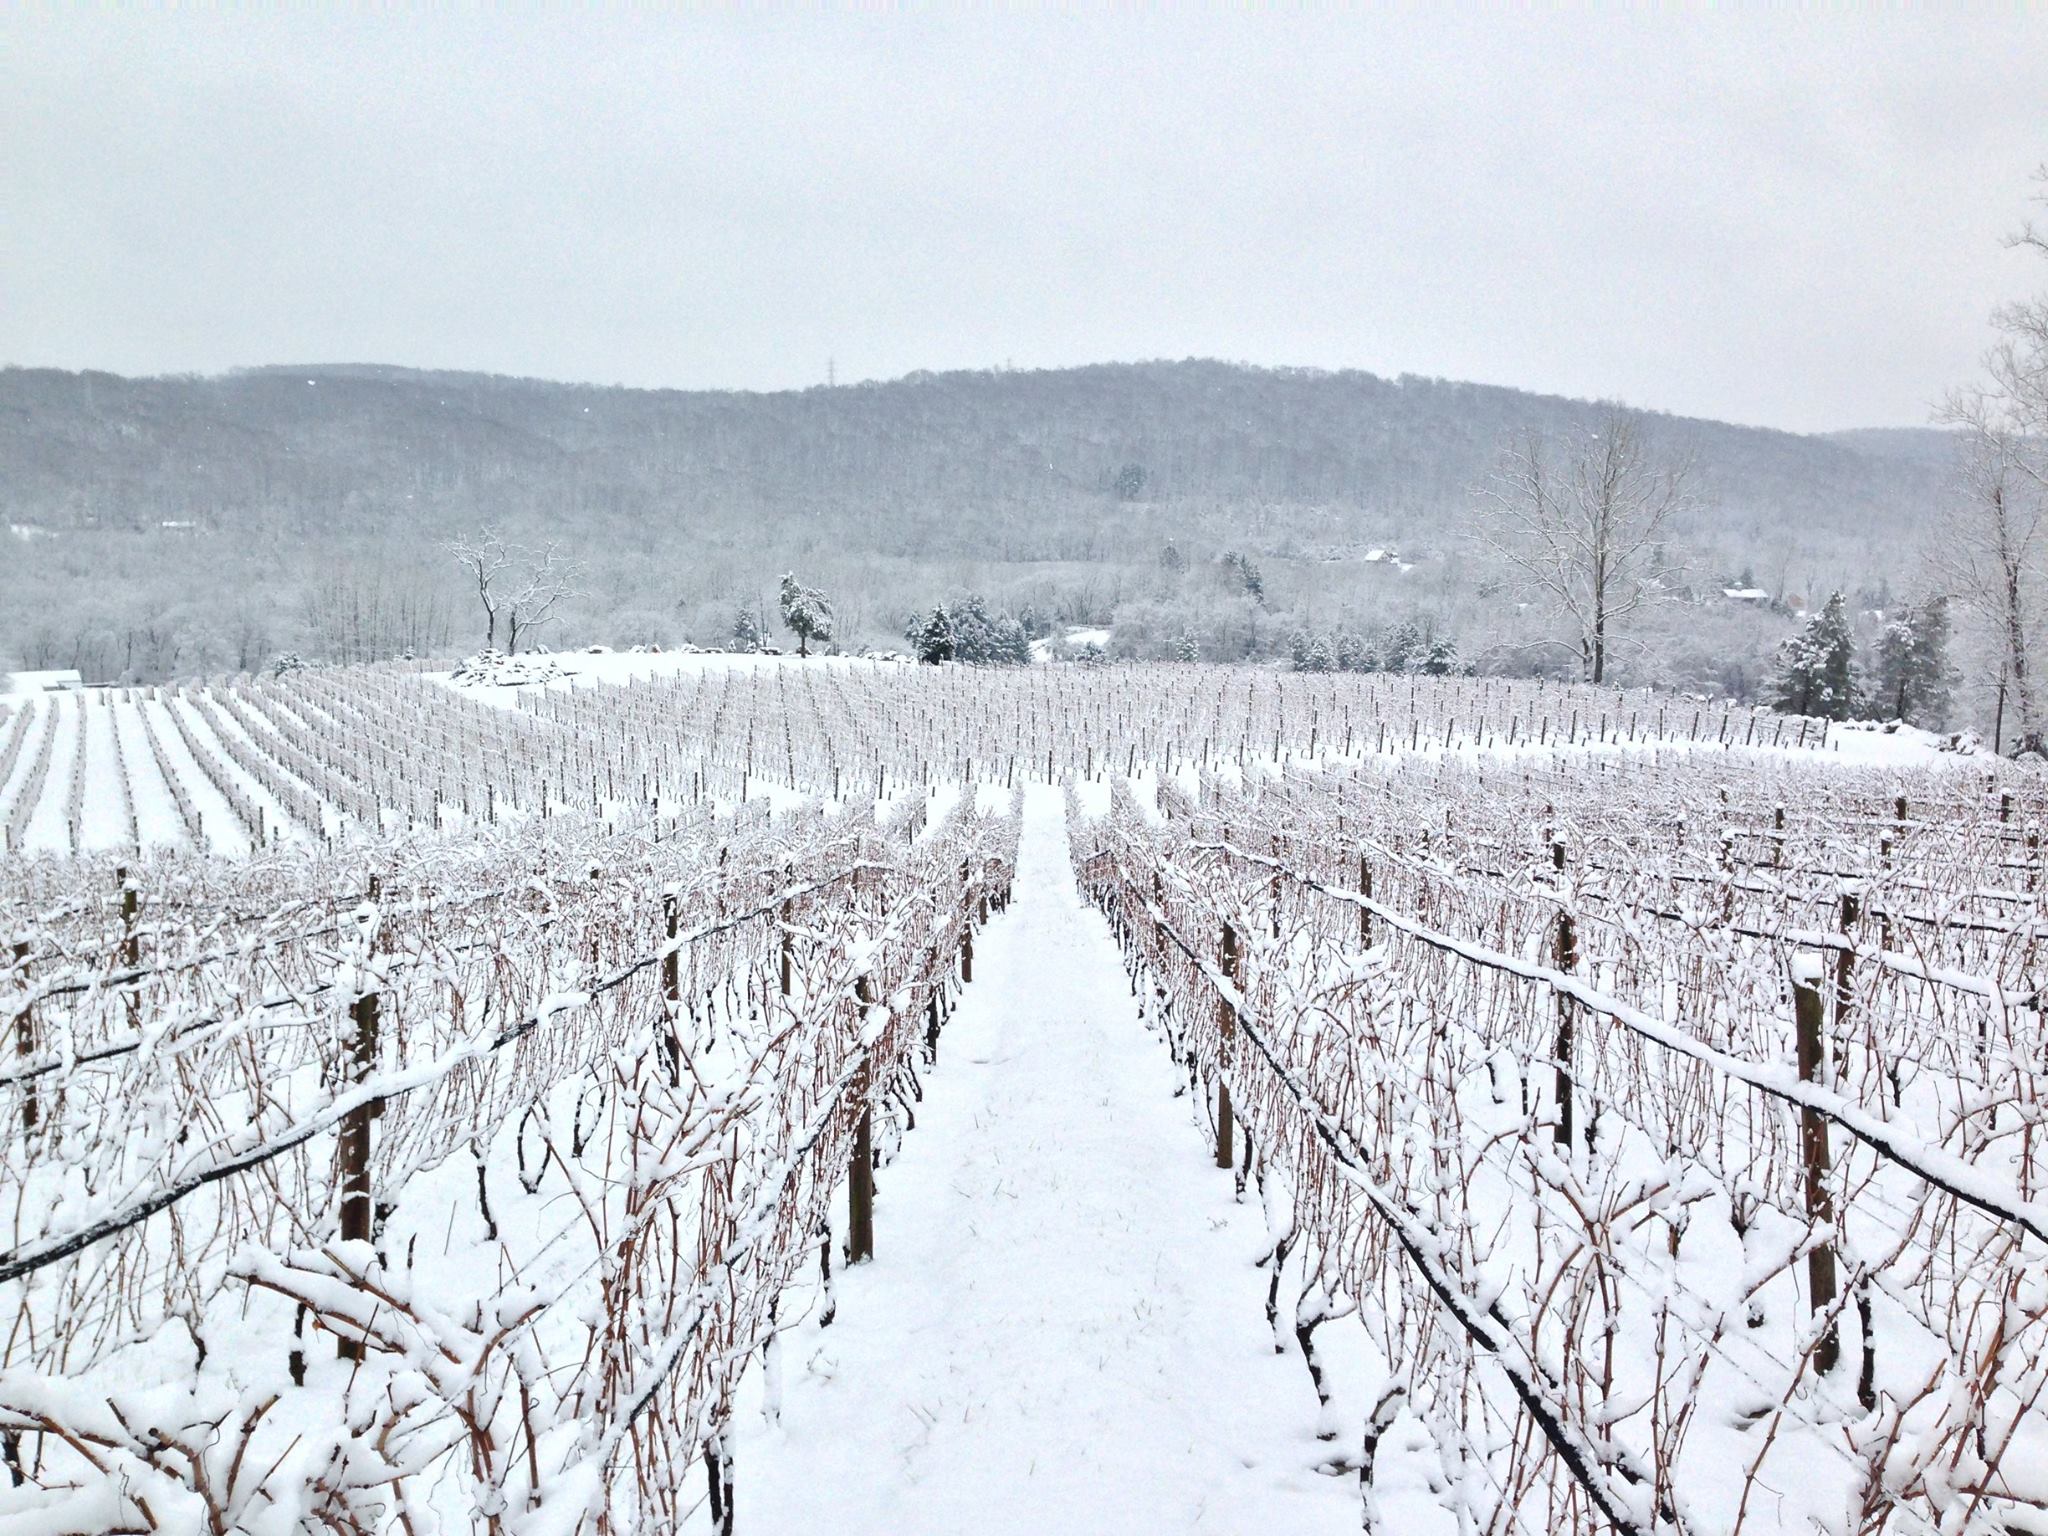 Alba Vineyard & Winery NJ vineyard in winter